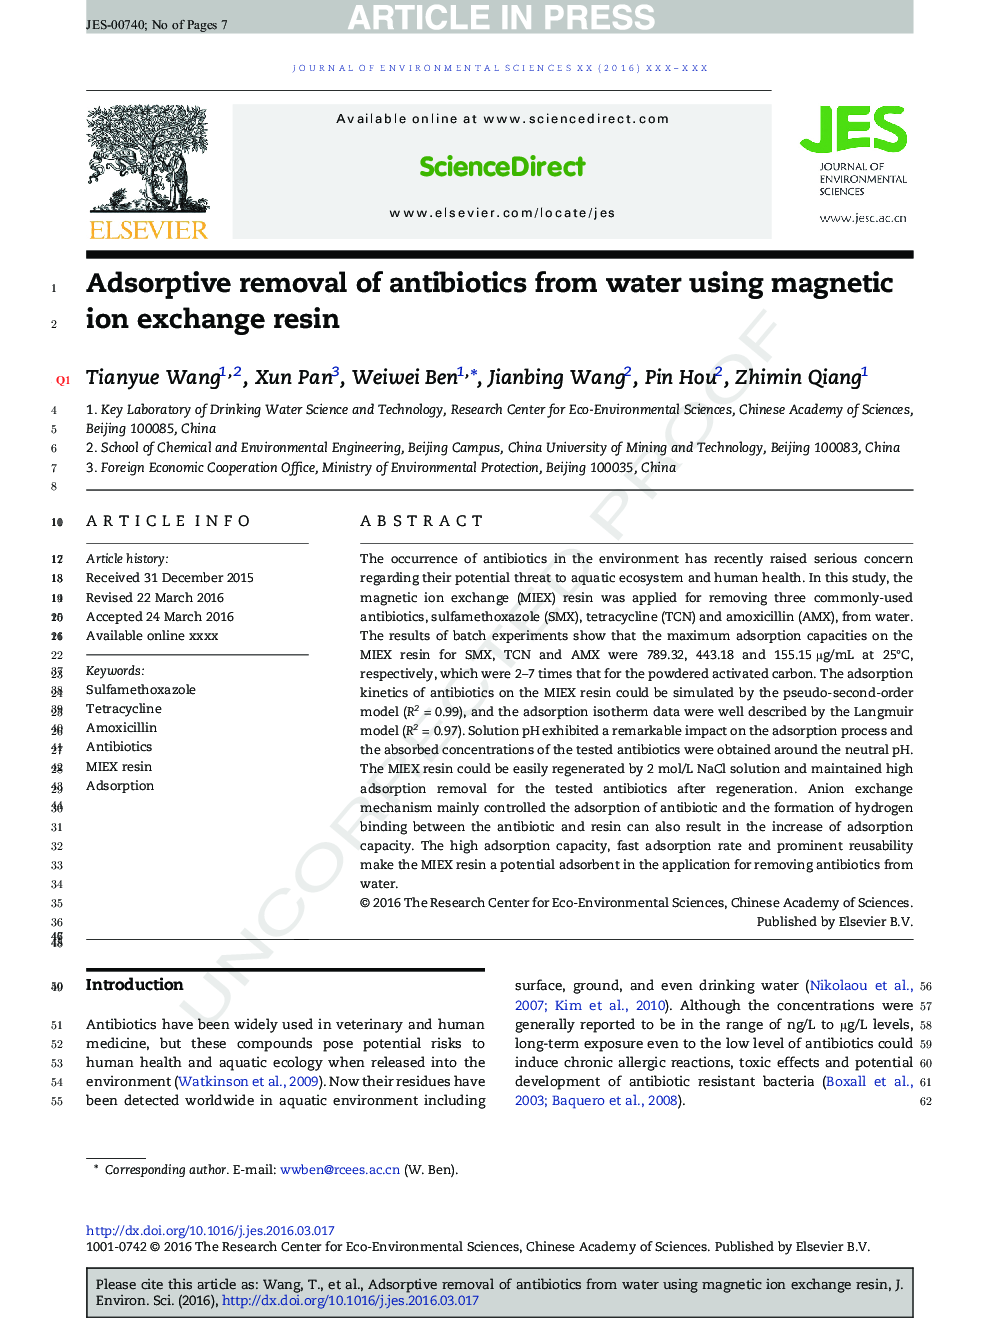 حذف جذب آنتی بیوتیک ها از آب با استفاده از یون تبادل یون رزین 